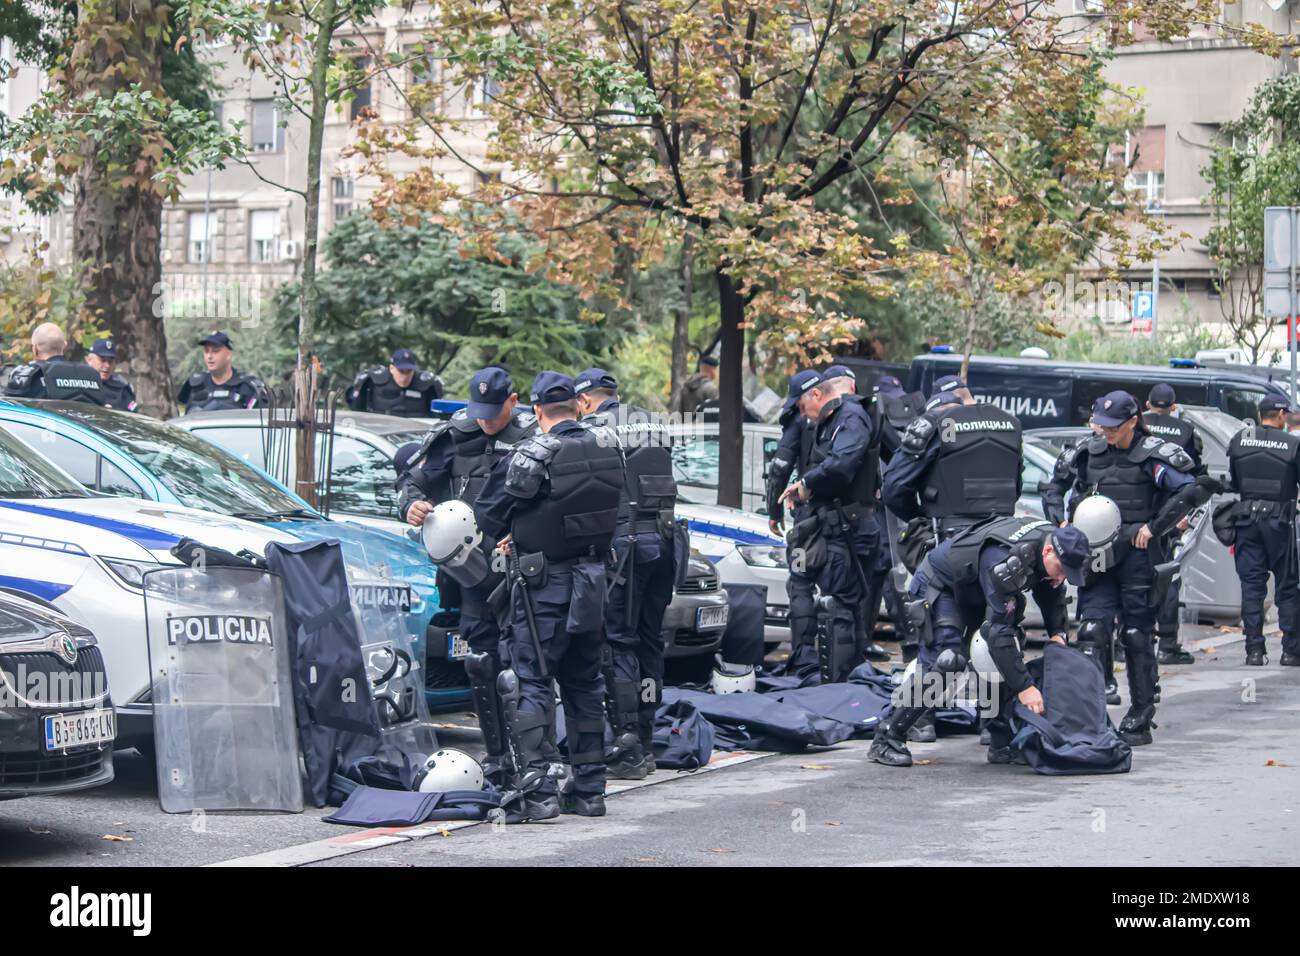 Polizeikräfte und Angehörige von Sondereinheiten der Aufständischen Polizei in Uniformen und Straßensperren Stockfoto